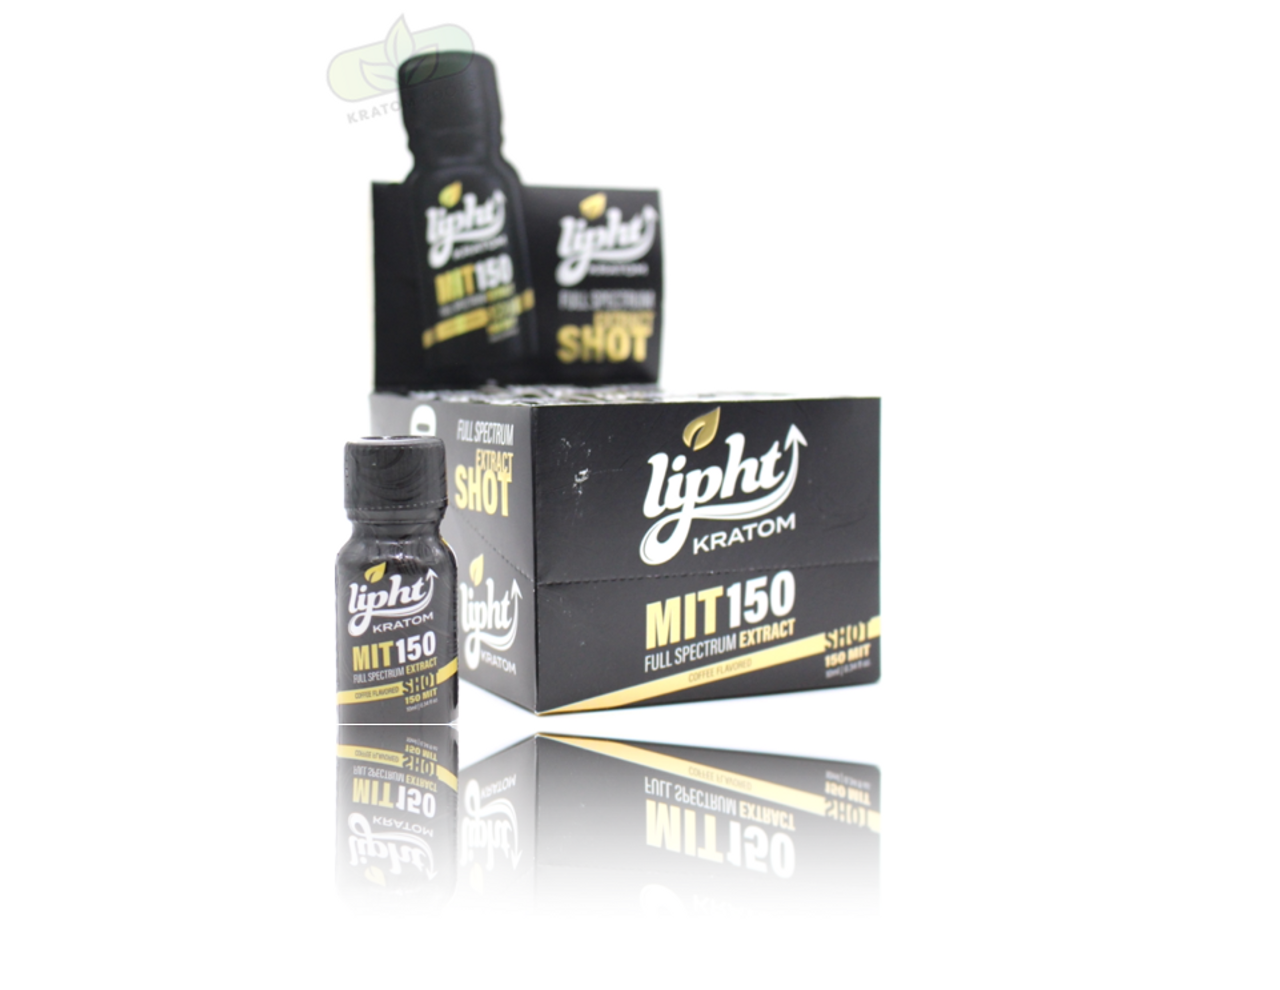 Oral Spray THC (150mg), MÜV